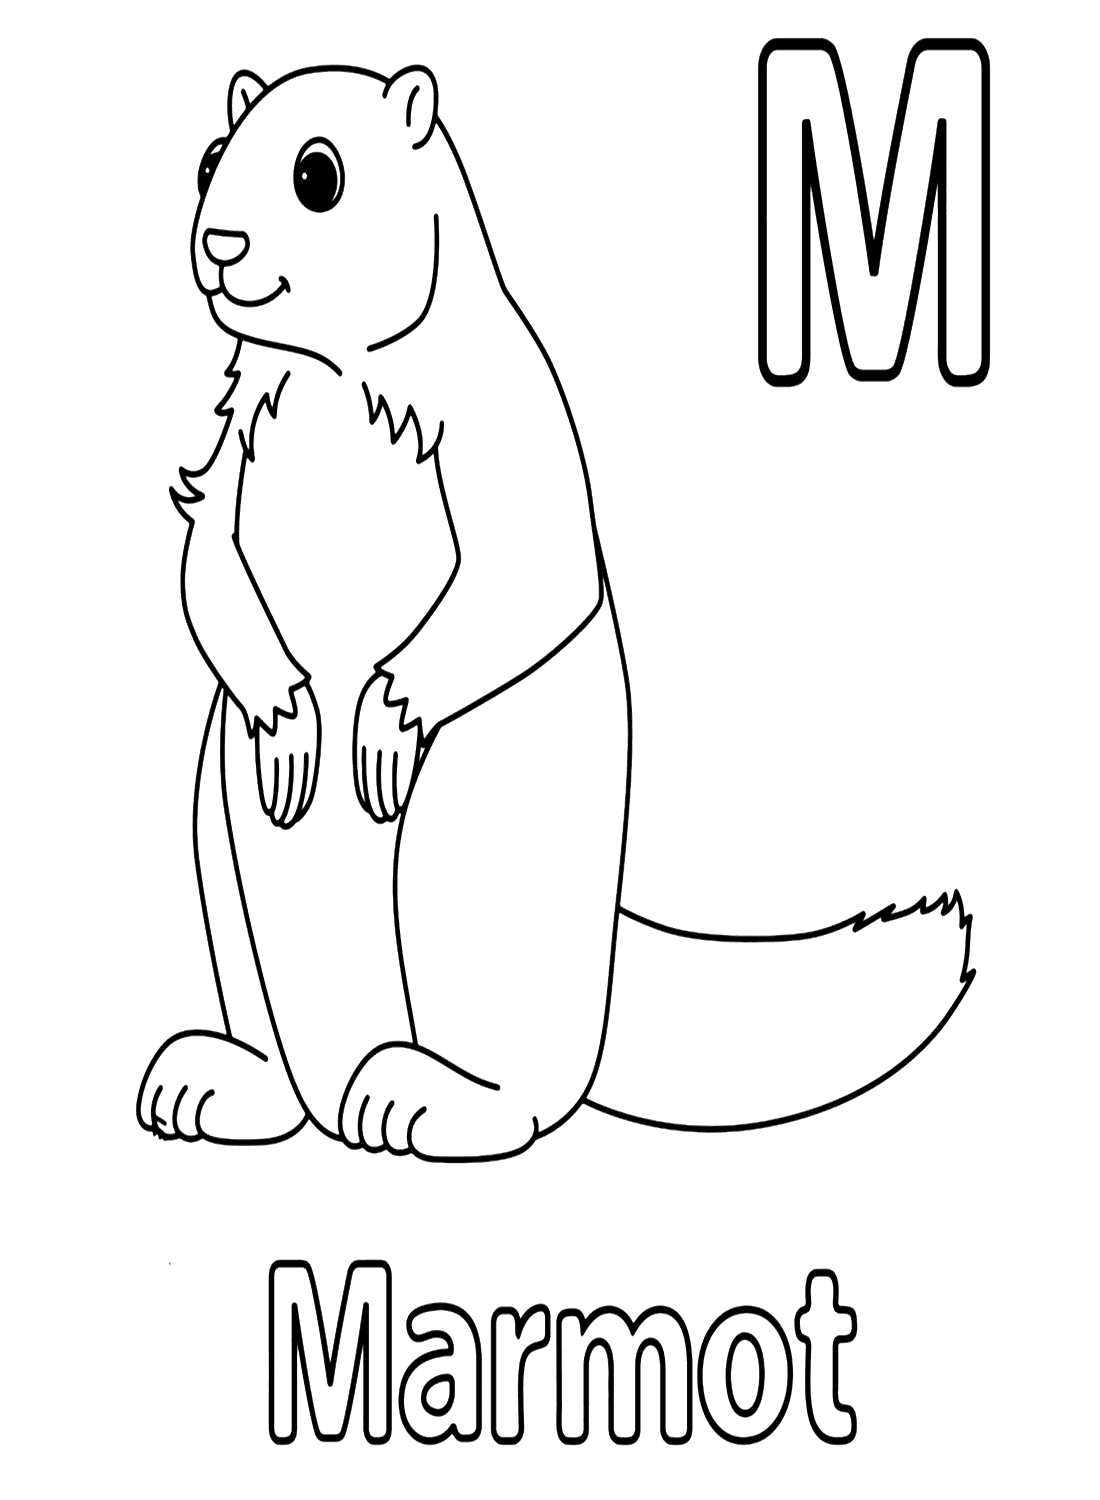 Letter M voor marmot van marmot